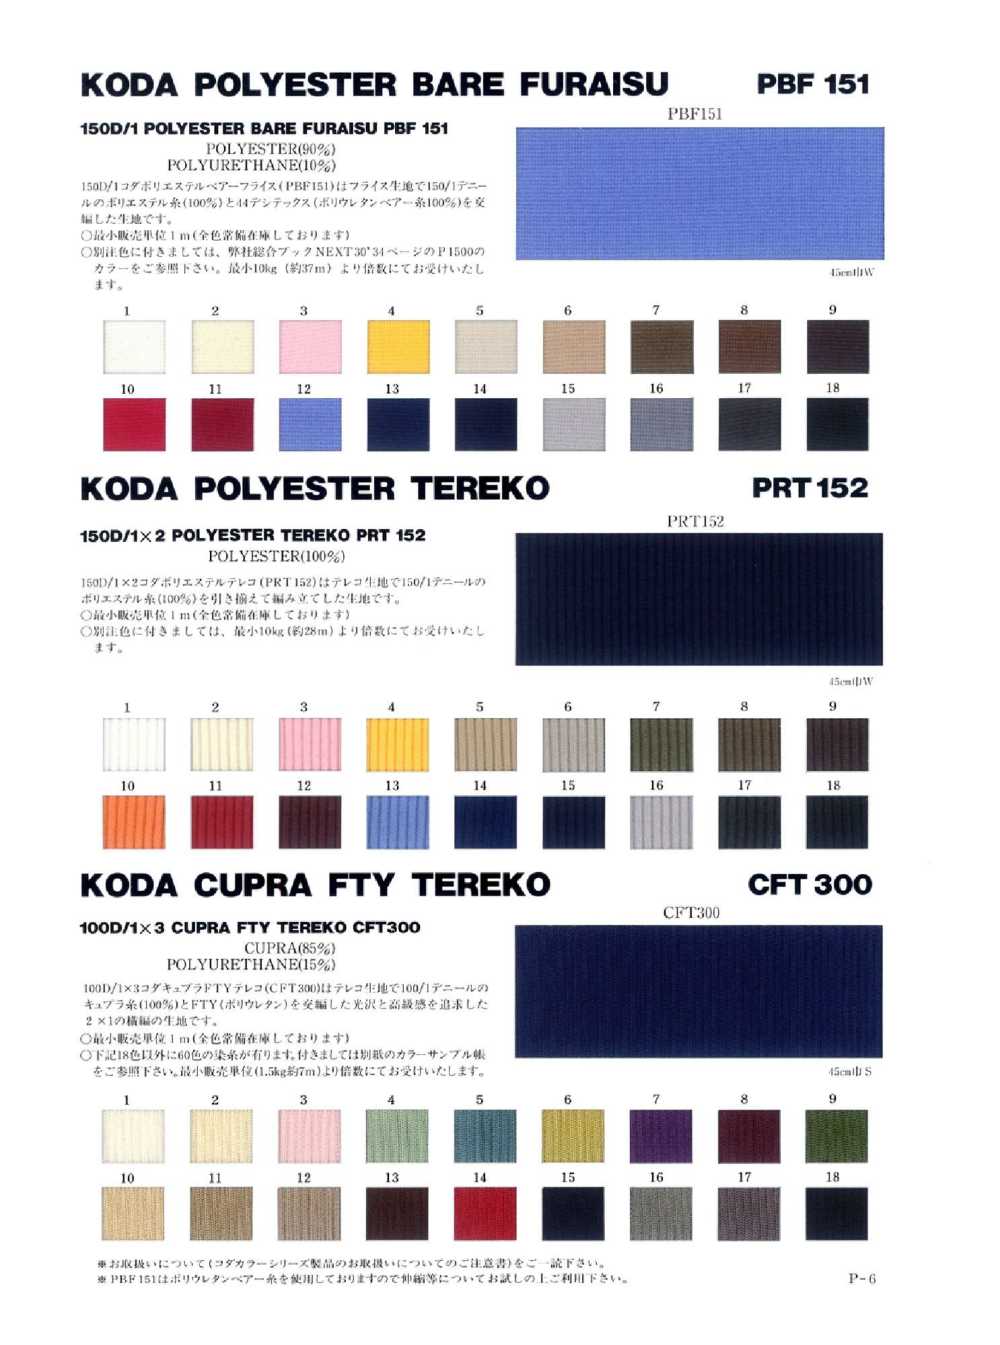 PRT152 150d/2 Polyester Tereko[Rib Knit] NEXT30